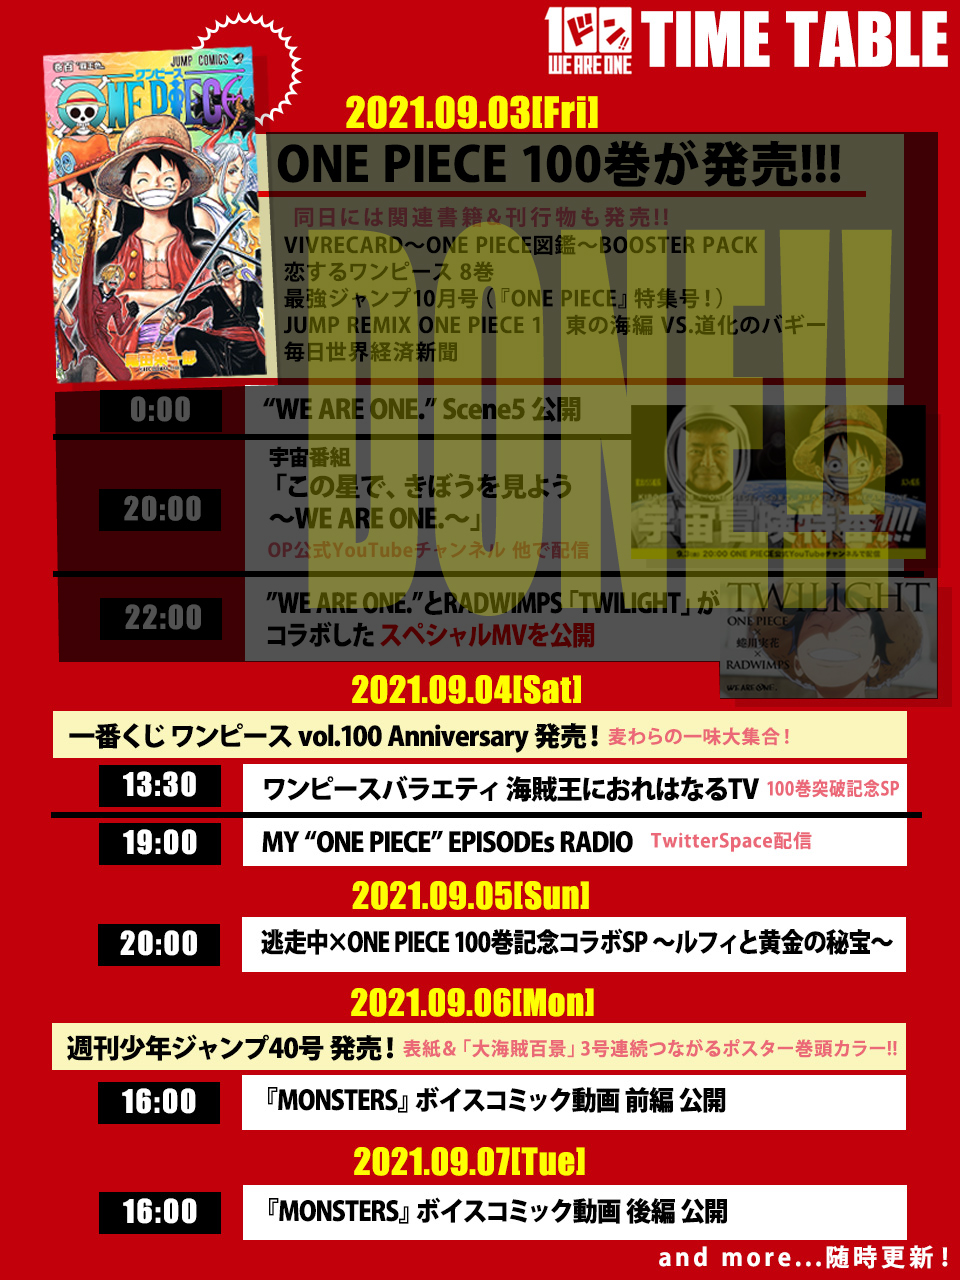 One Piece スタッフ 公式 Official 9月3日 本日の発表は以上です 100巻パーリー 当日をお楽しみ頂けておりましたらうれしいです 明日は 海賊王におれはなるtv 100巻突破記念sp やtwitter Spaceで配信する My One Piece Episodes Radio をお